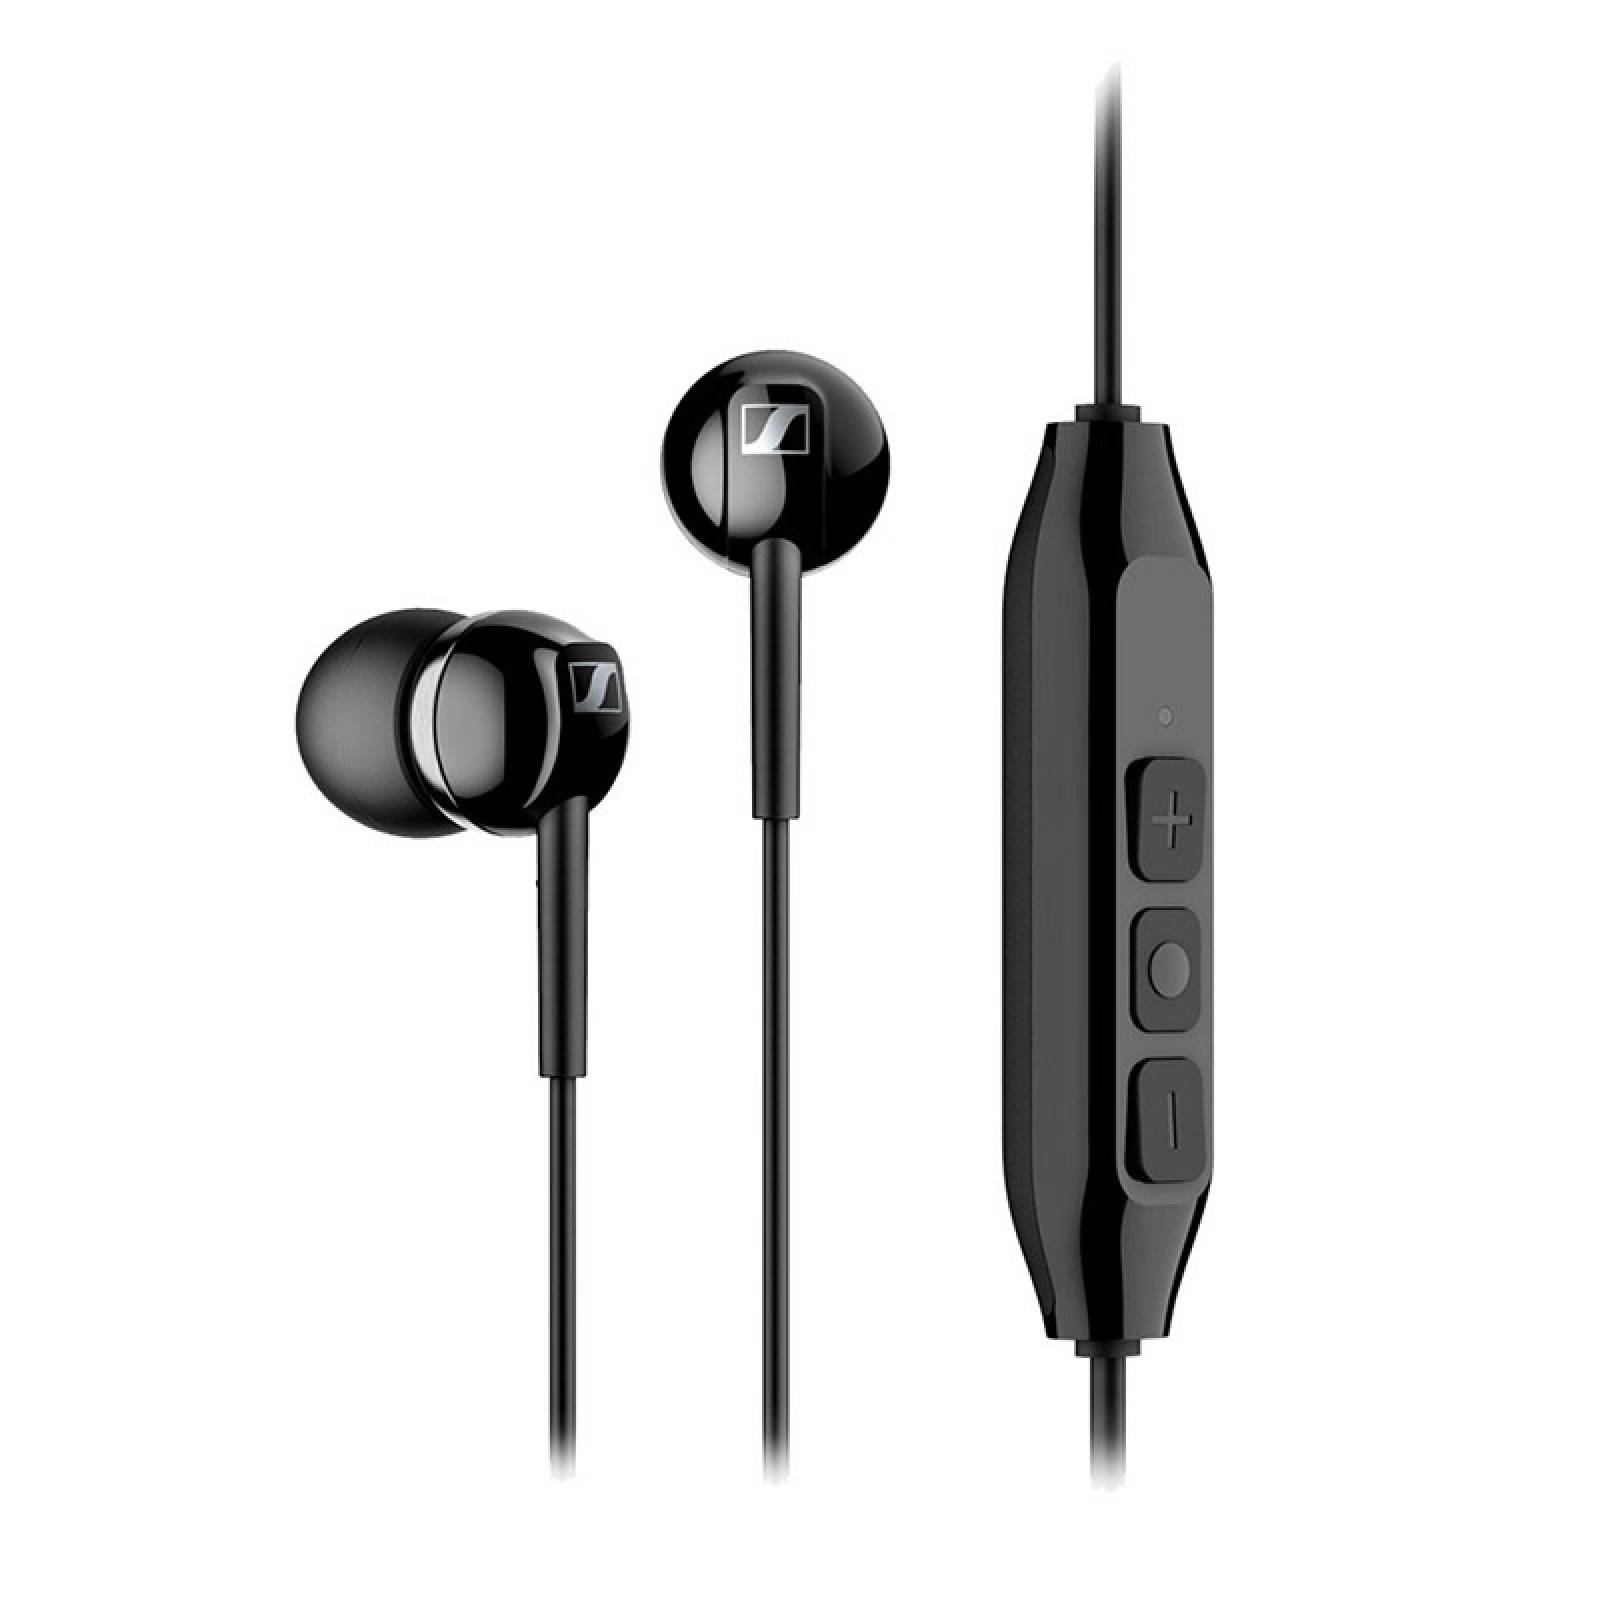 Audífonos Sennheiser Cx 150bt Bluetooth 5.0 Auriculares Inalambricos–  Saldos A Huevo